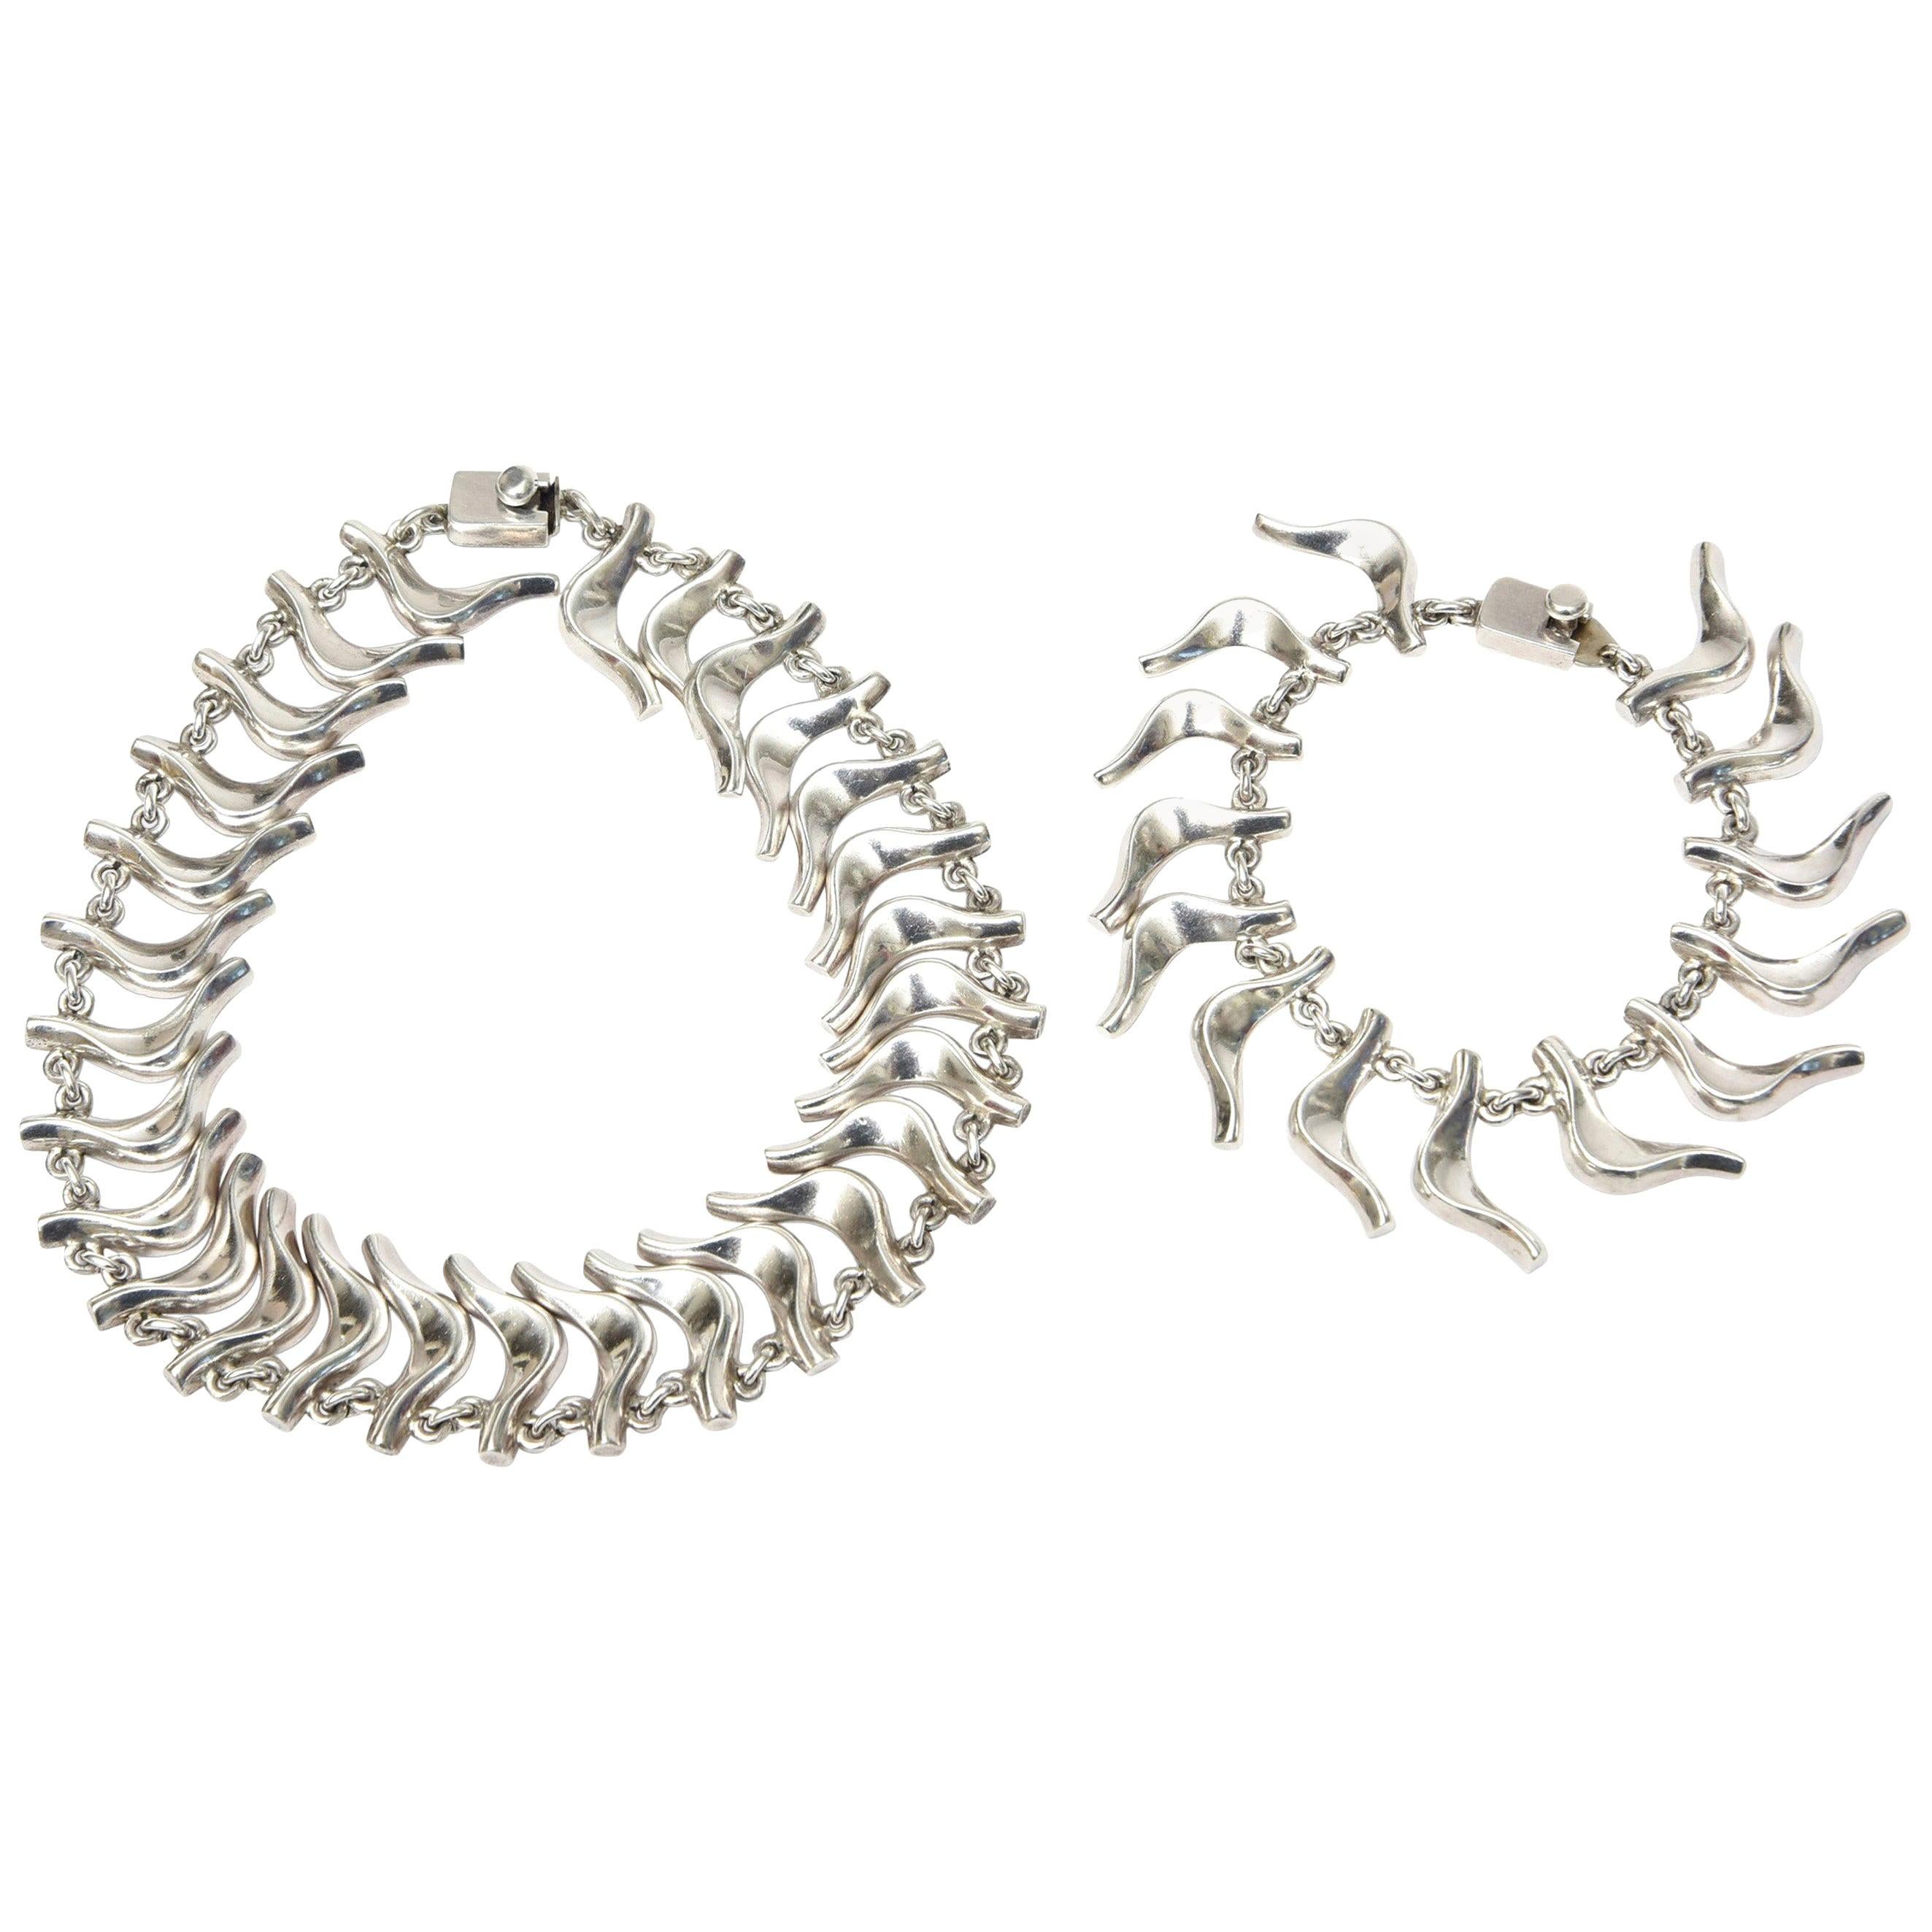 Vintage Sterling Silver Signed Collar Necklace and Charm Bracelet Set  For Sale